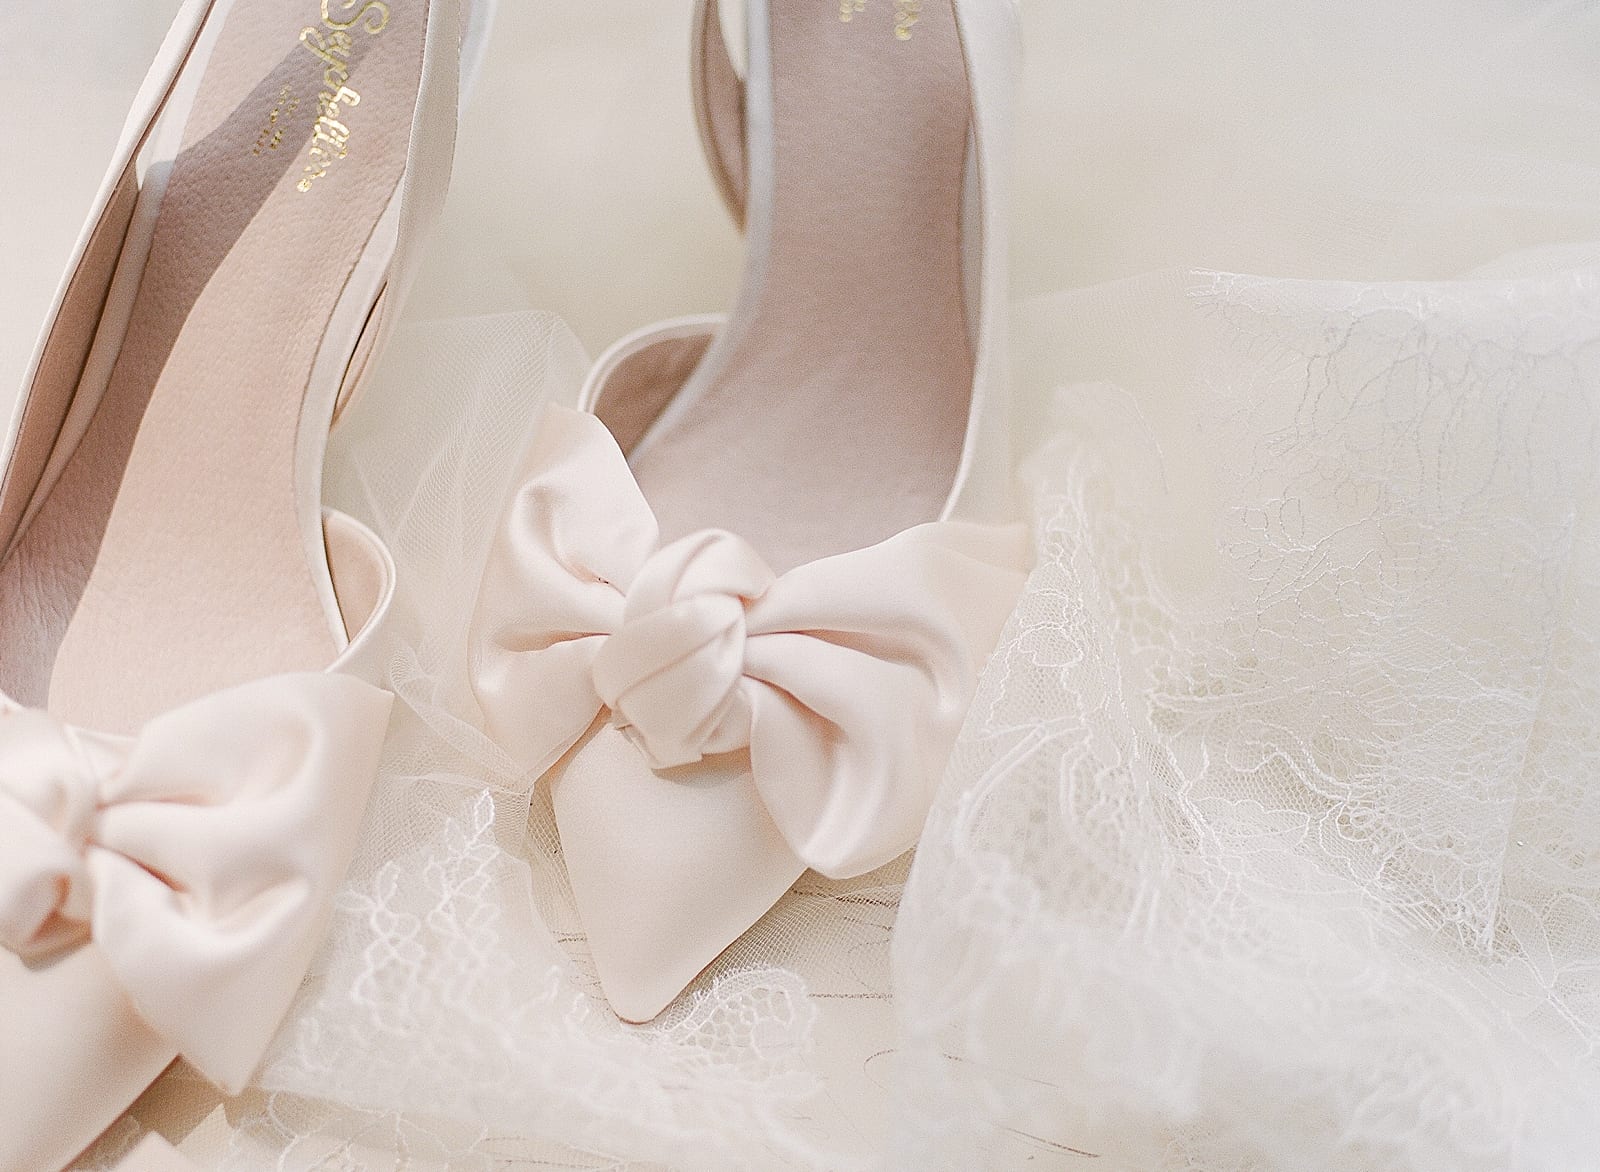 Bridal Wedding Shoes Photo